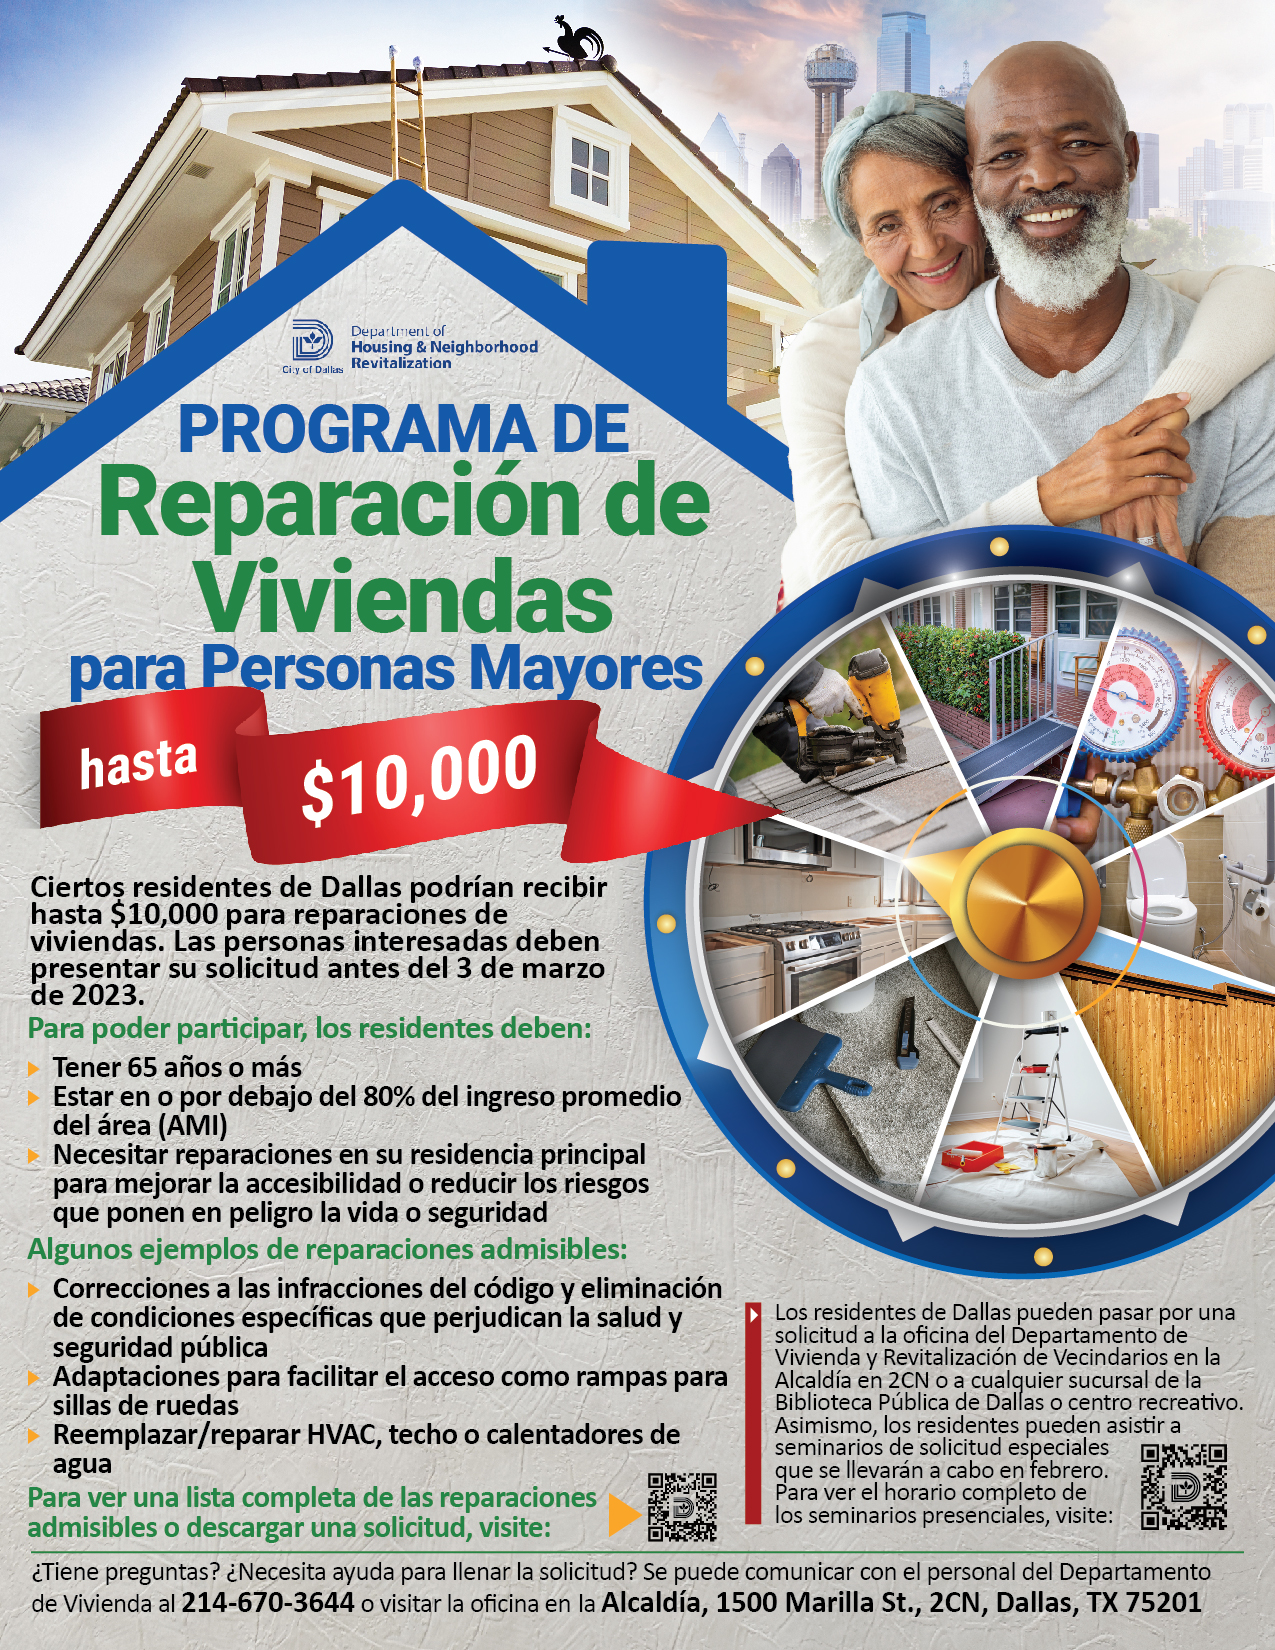 Senior Home Repair Program flyer in Spanish